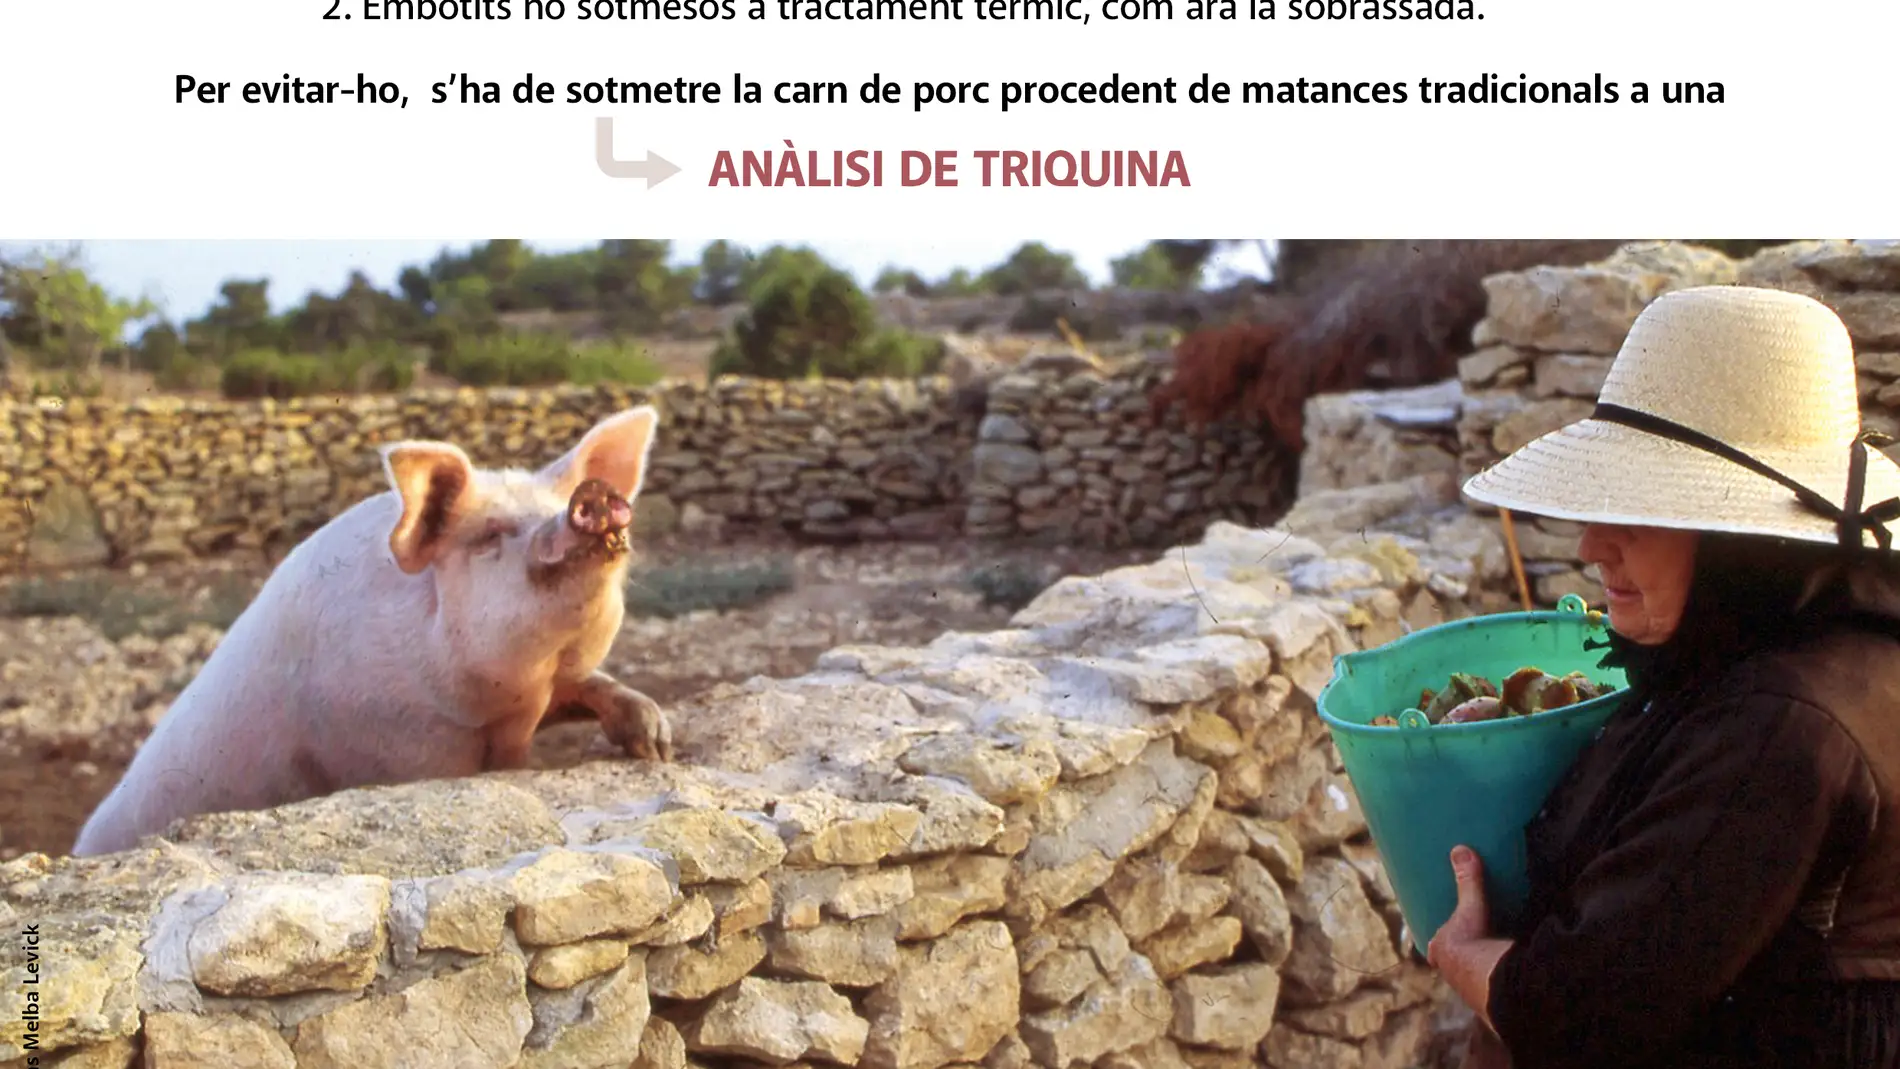 Campaña para analizar la carne de matanzas domiciliarias y controlar la triquinosi en Formentera